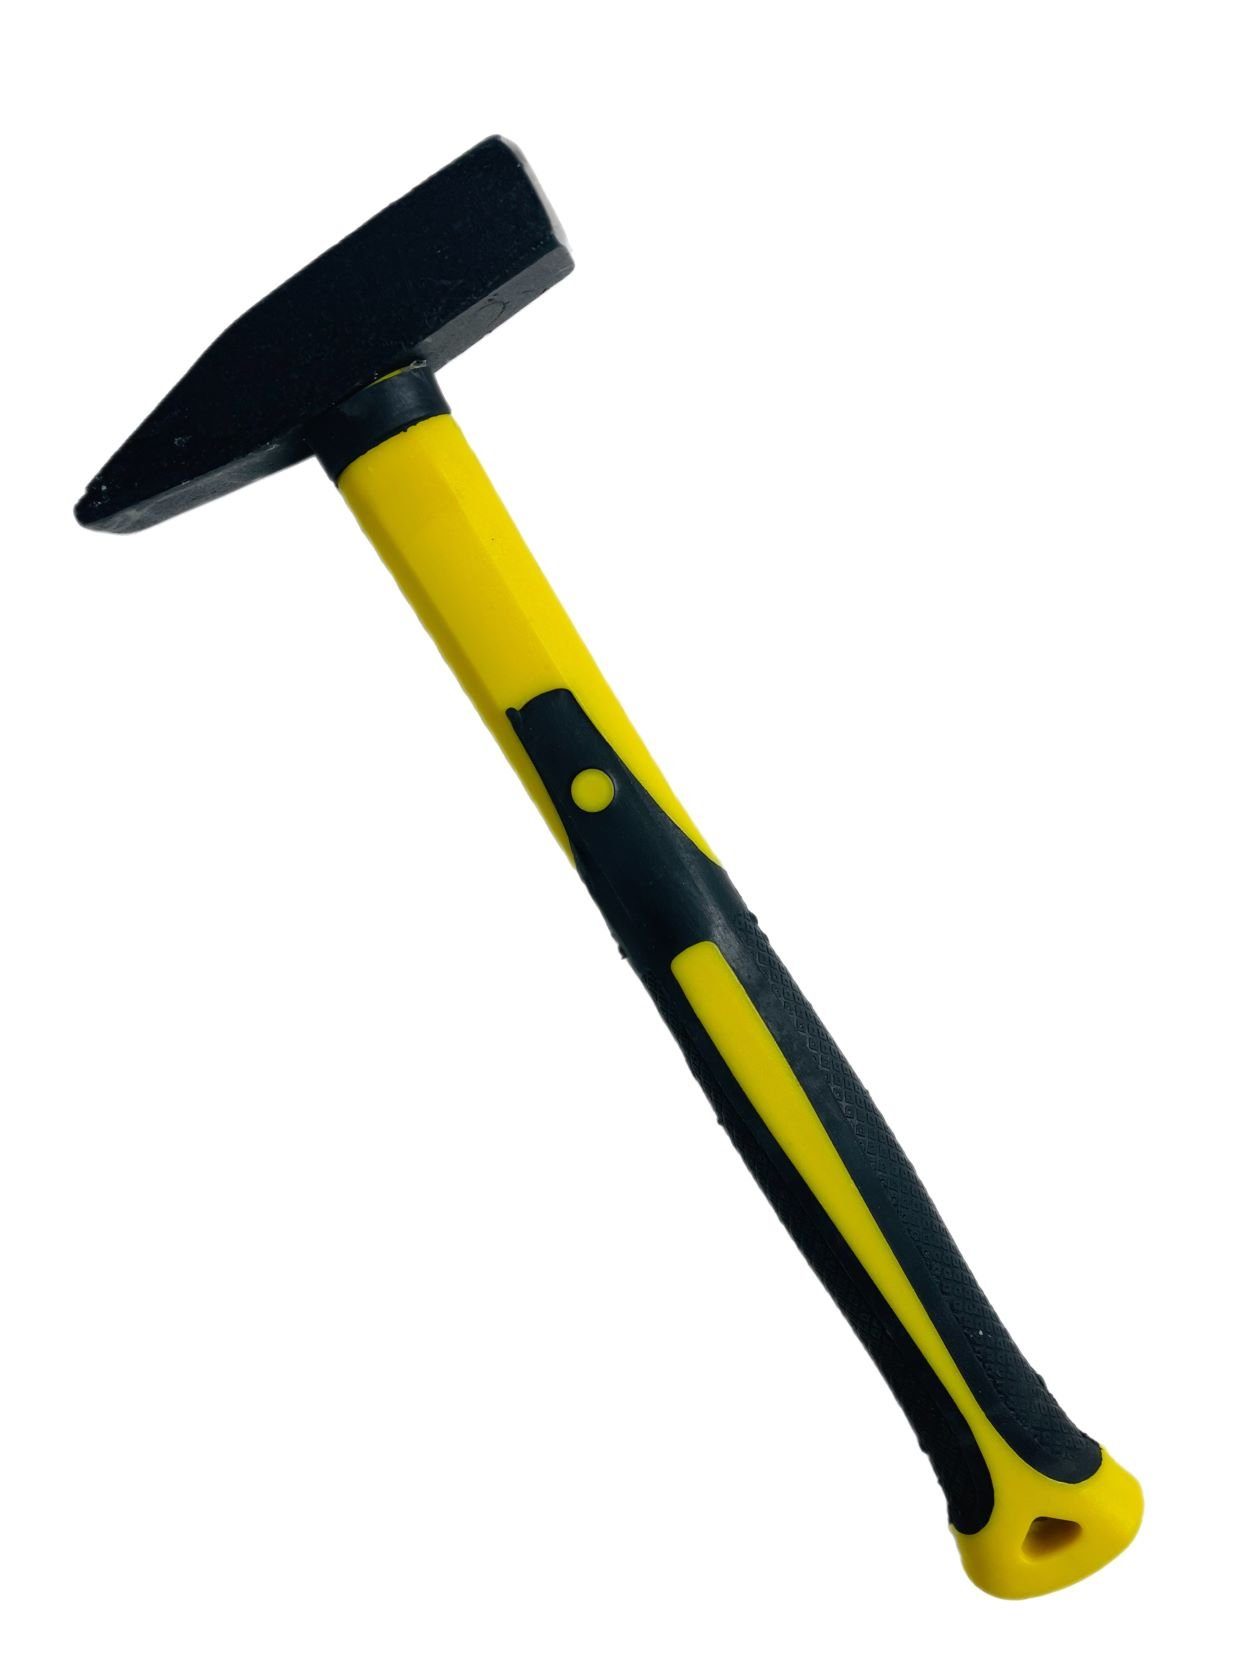 Schlosserhammer VaGo-Tools 800g Fiberglasstiel Hammer Hammer